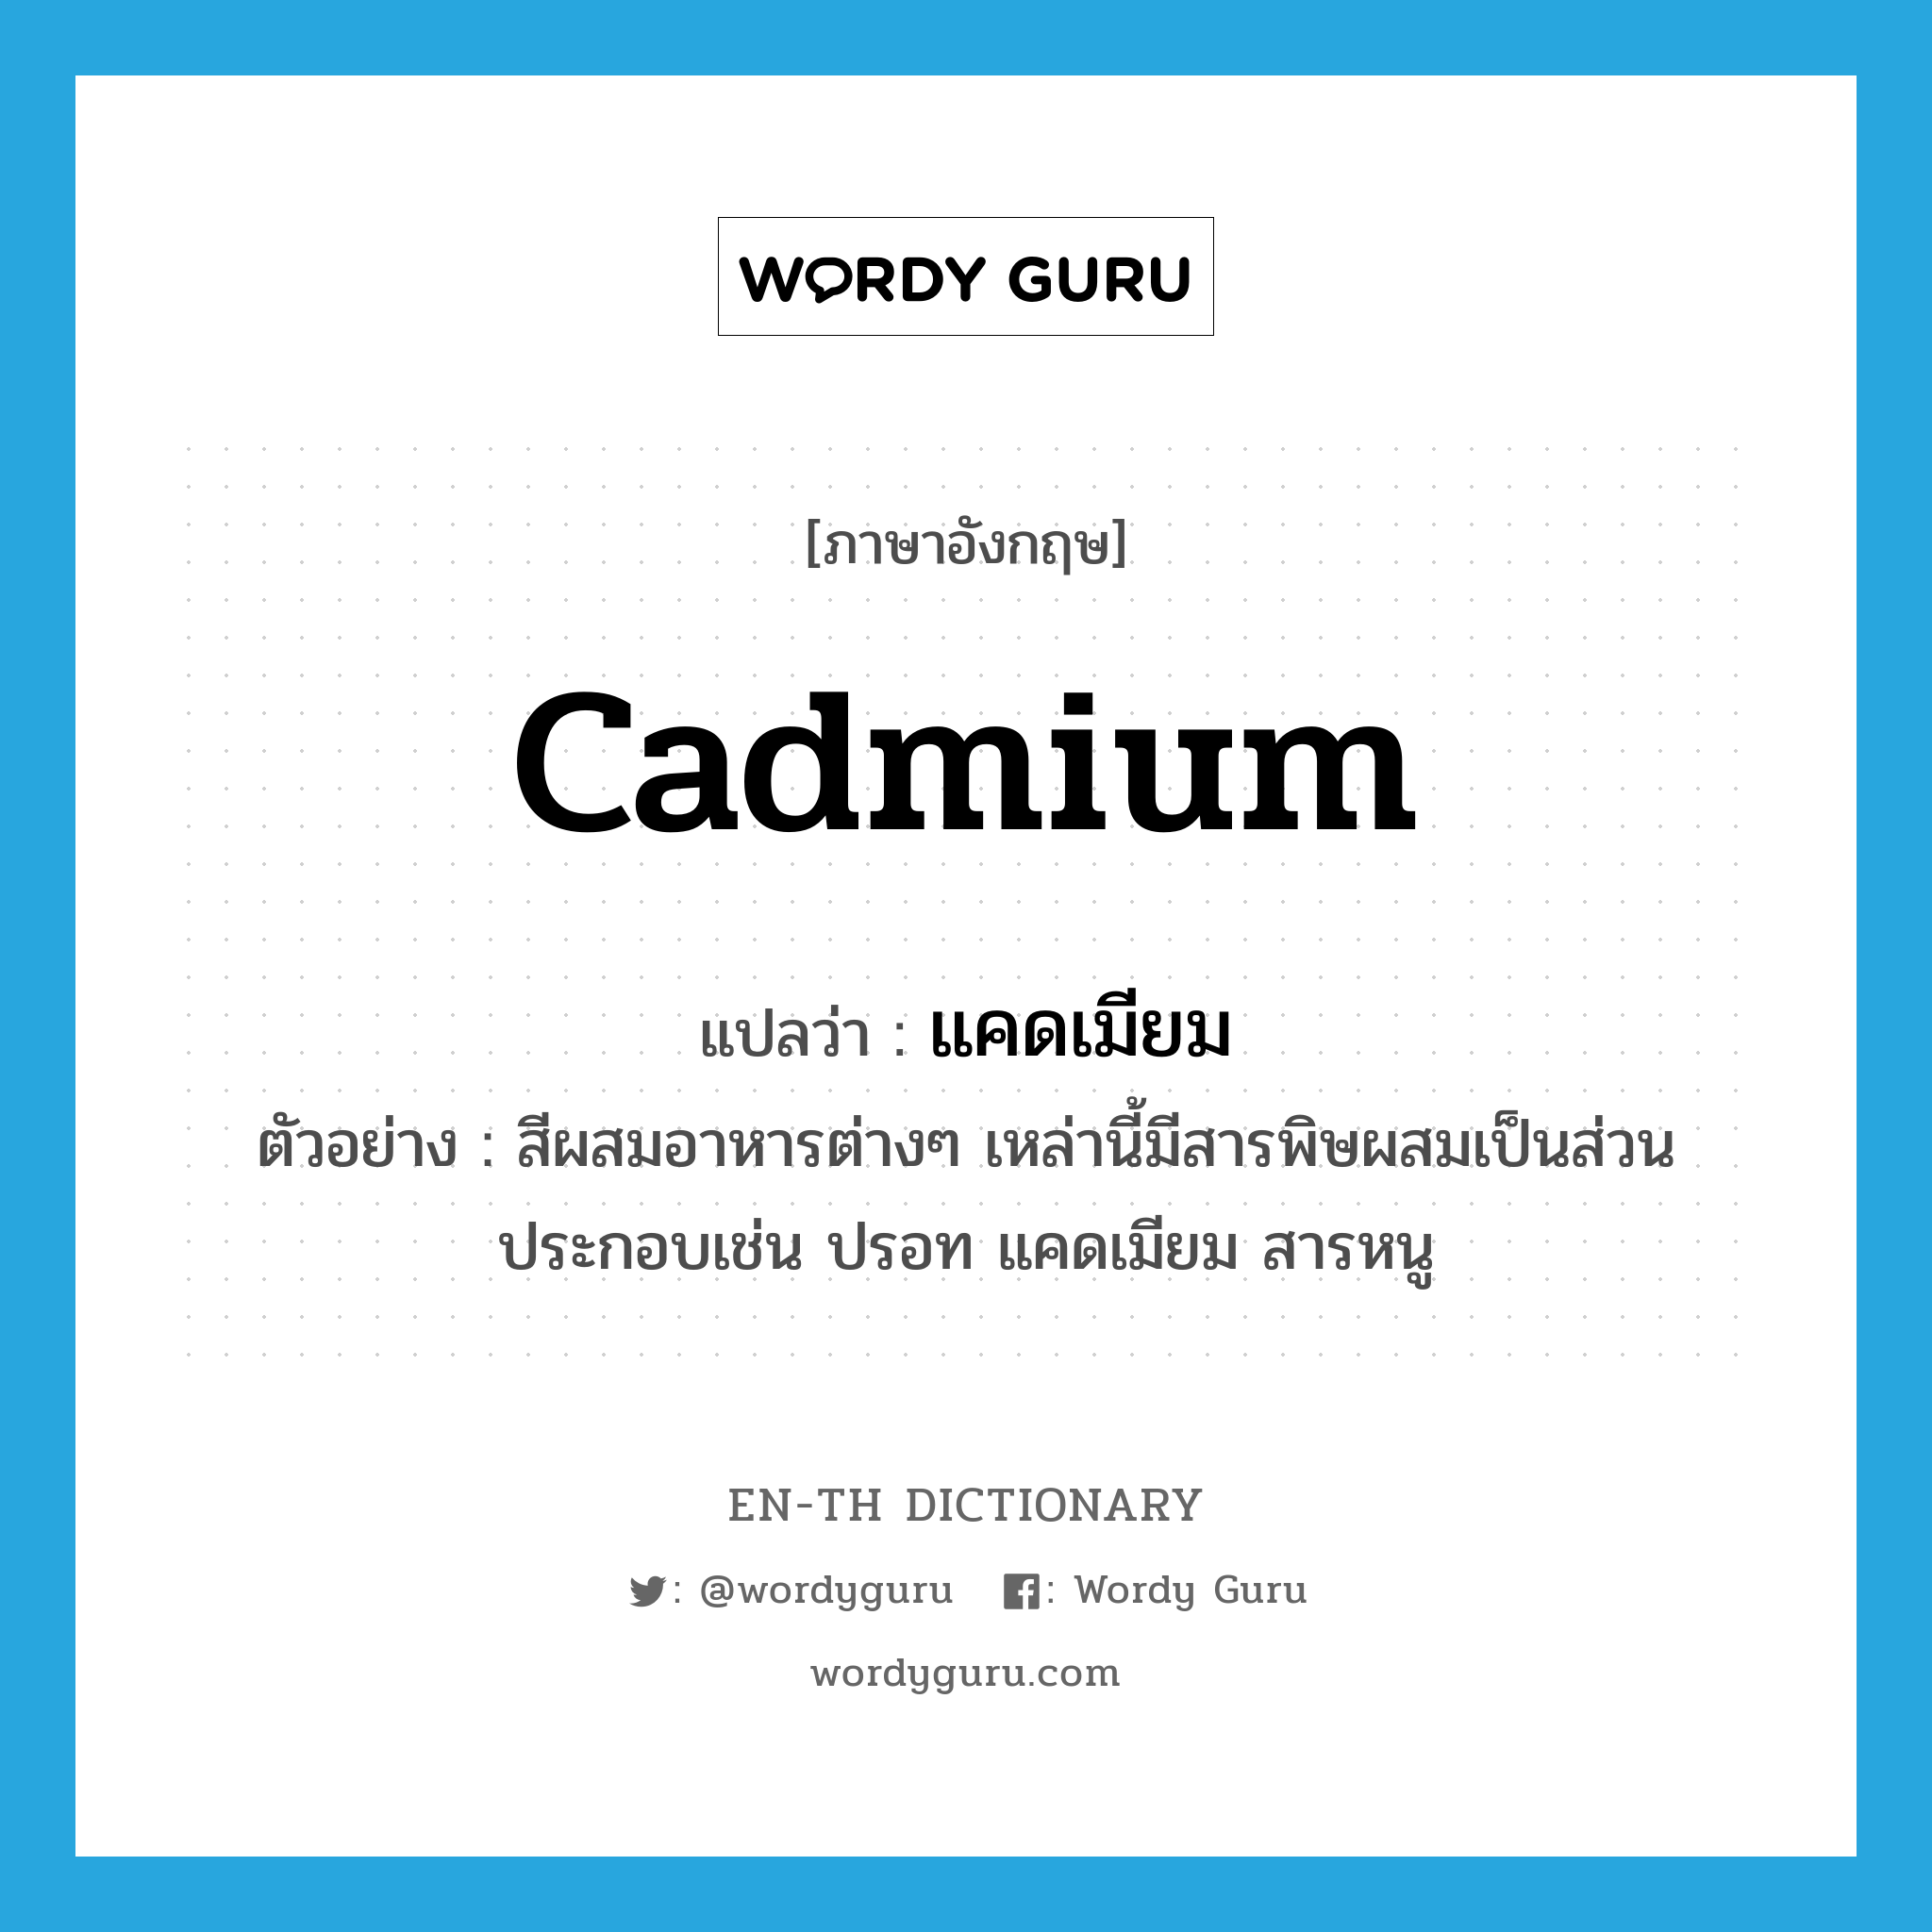 แคดเมียม ภาษาอังกฤษ?, คำศัพท์ภาษาอังกฤษ แคดเมียม แปลว่า cadmium ประเภท N ตัวอย่าง สีผสมอาหารต่างๆ เหล่านี้มีสารพิษผสมเป็นส่วนประกอบเช่น ปรอท แคดเมียม สารหนู หมวด N